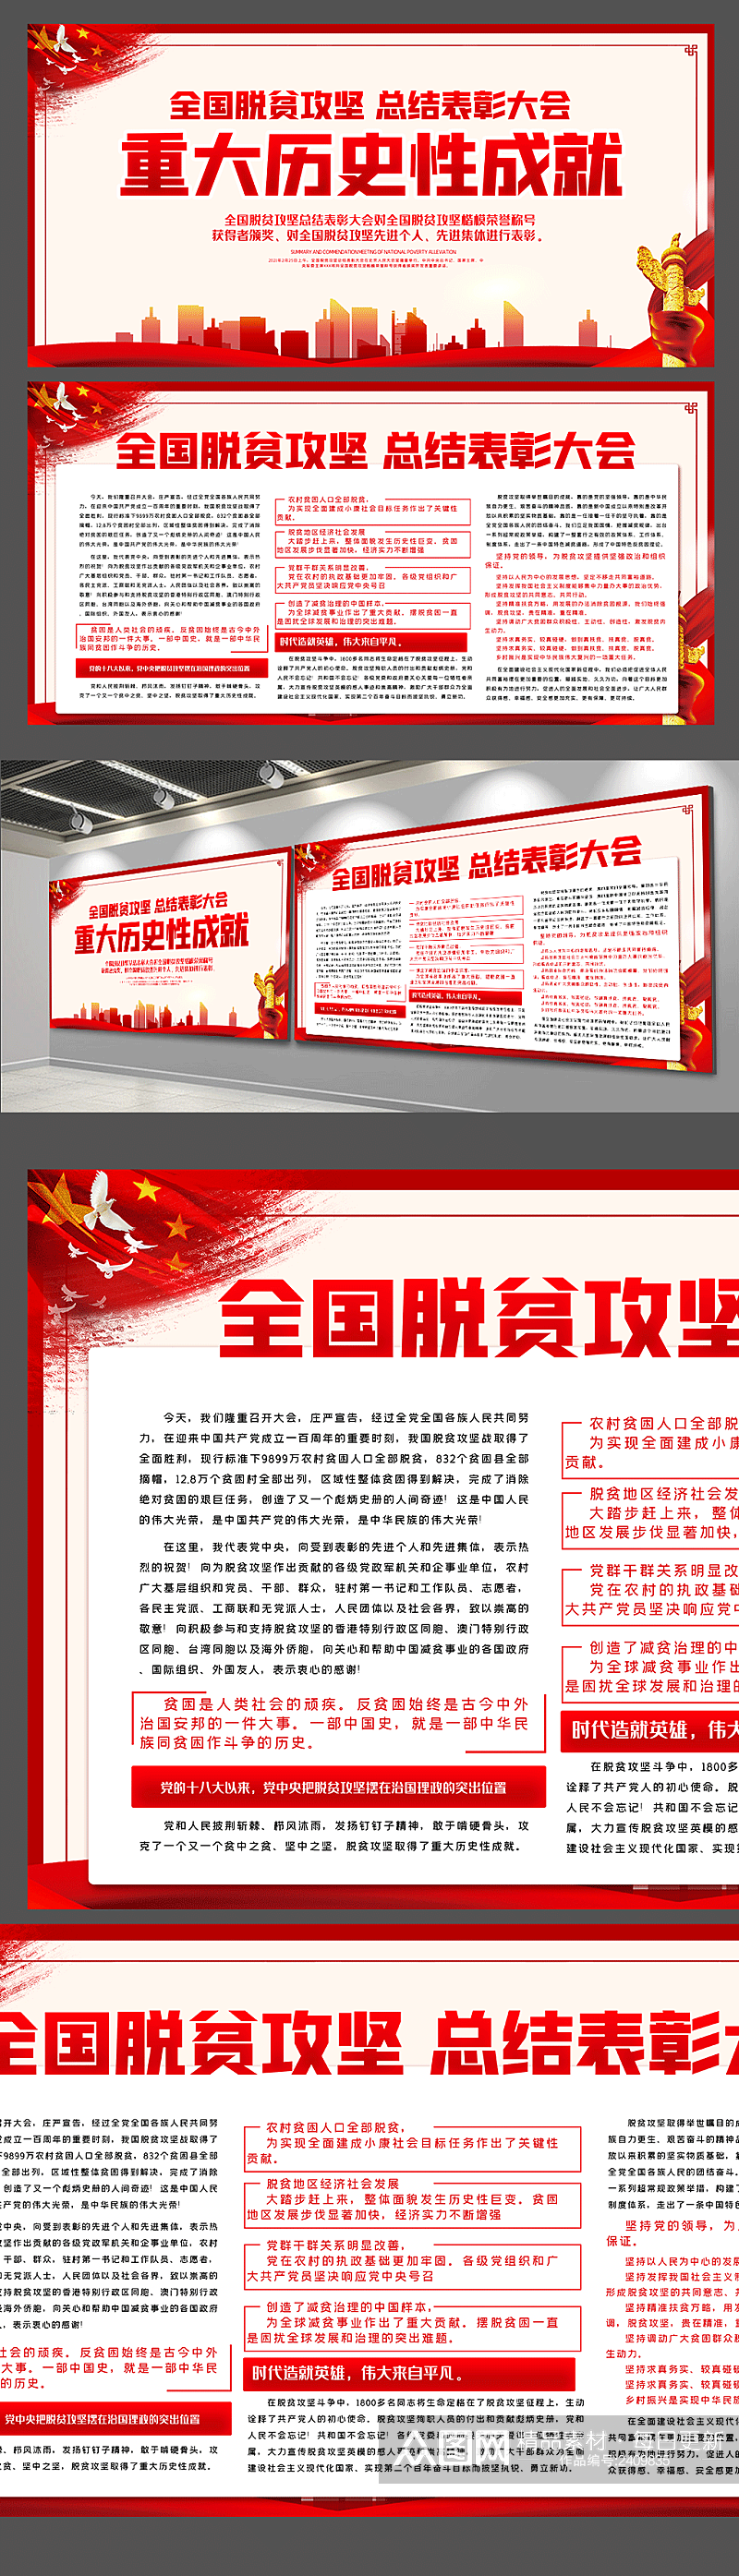 中国已消除绝对贫困内容宣传栏展板素材